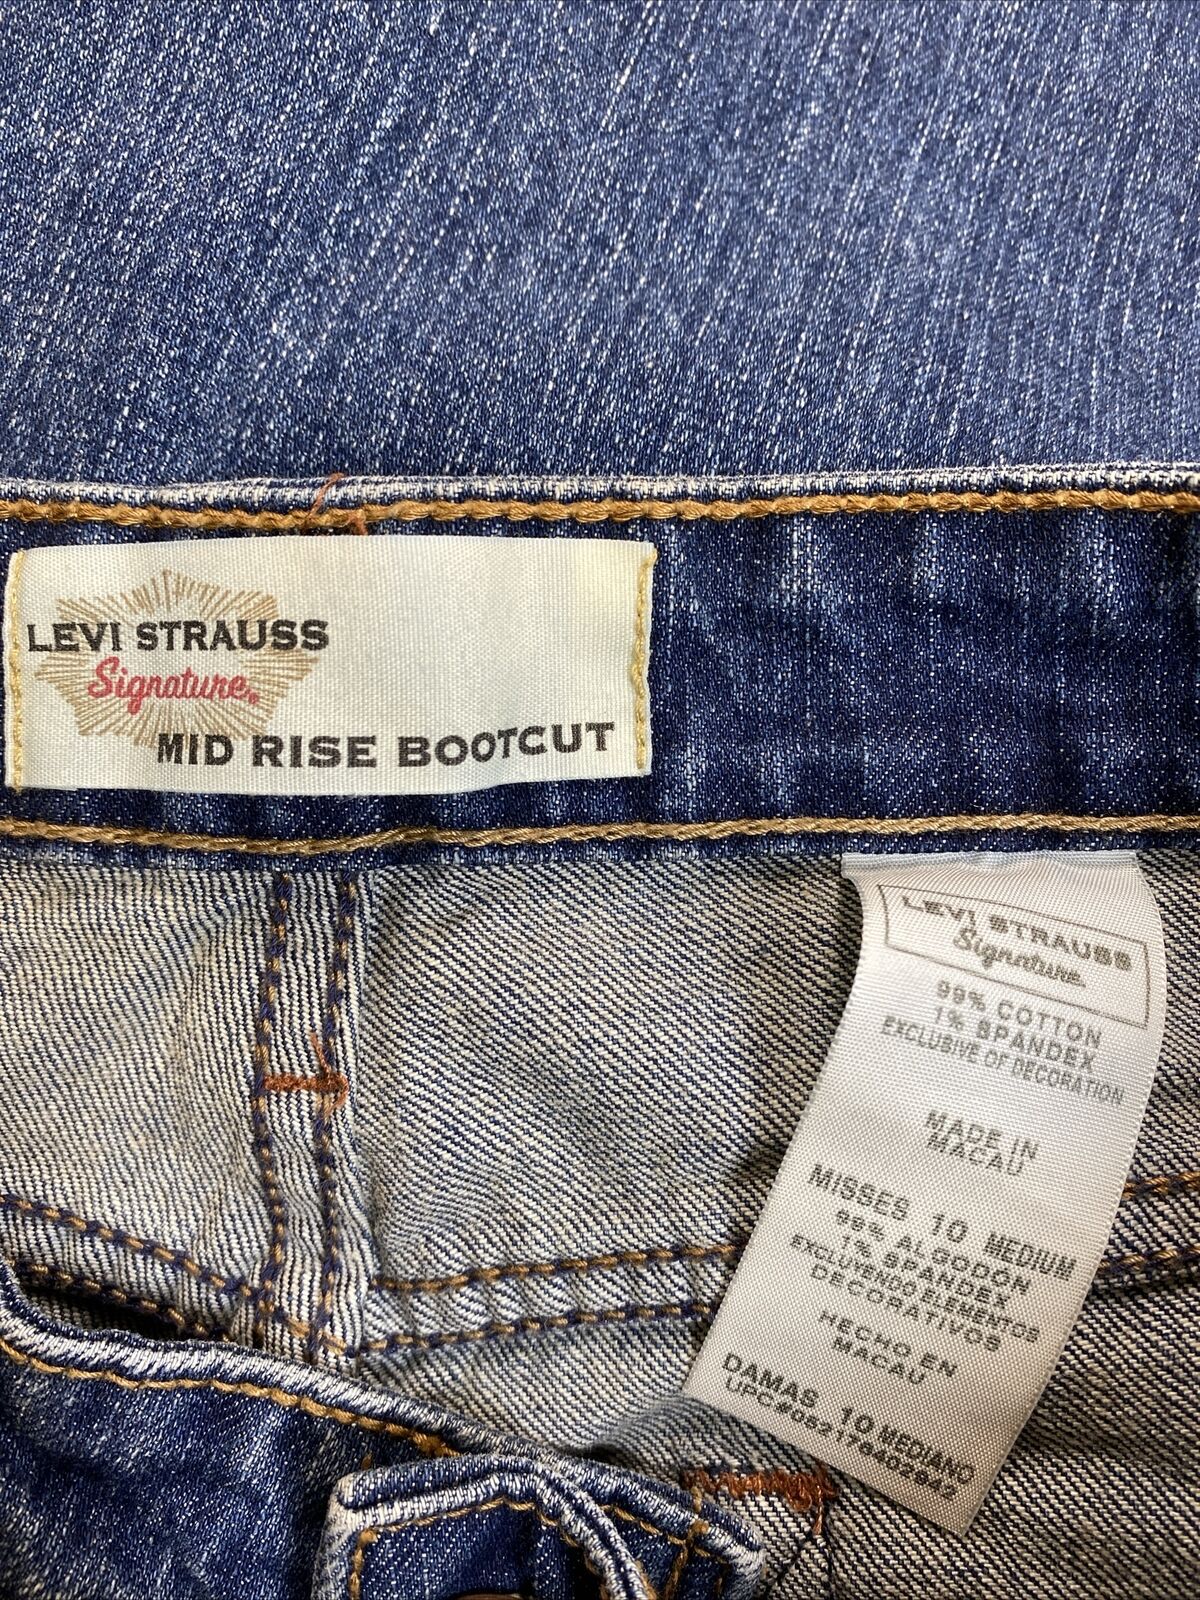 Levi's Signature Women's Dark Wash Retro Mid Rise Boot Cut Jeans - 10 M